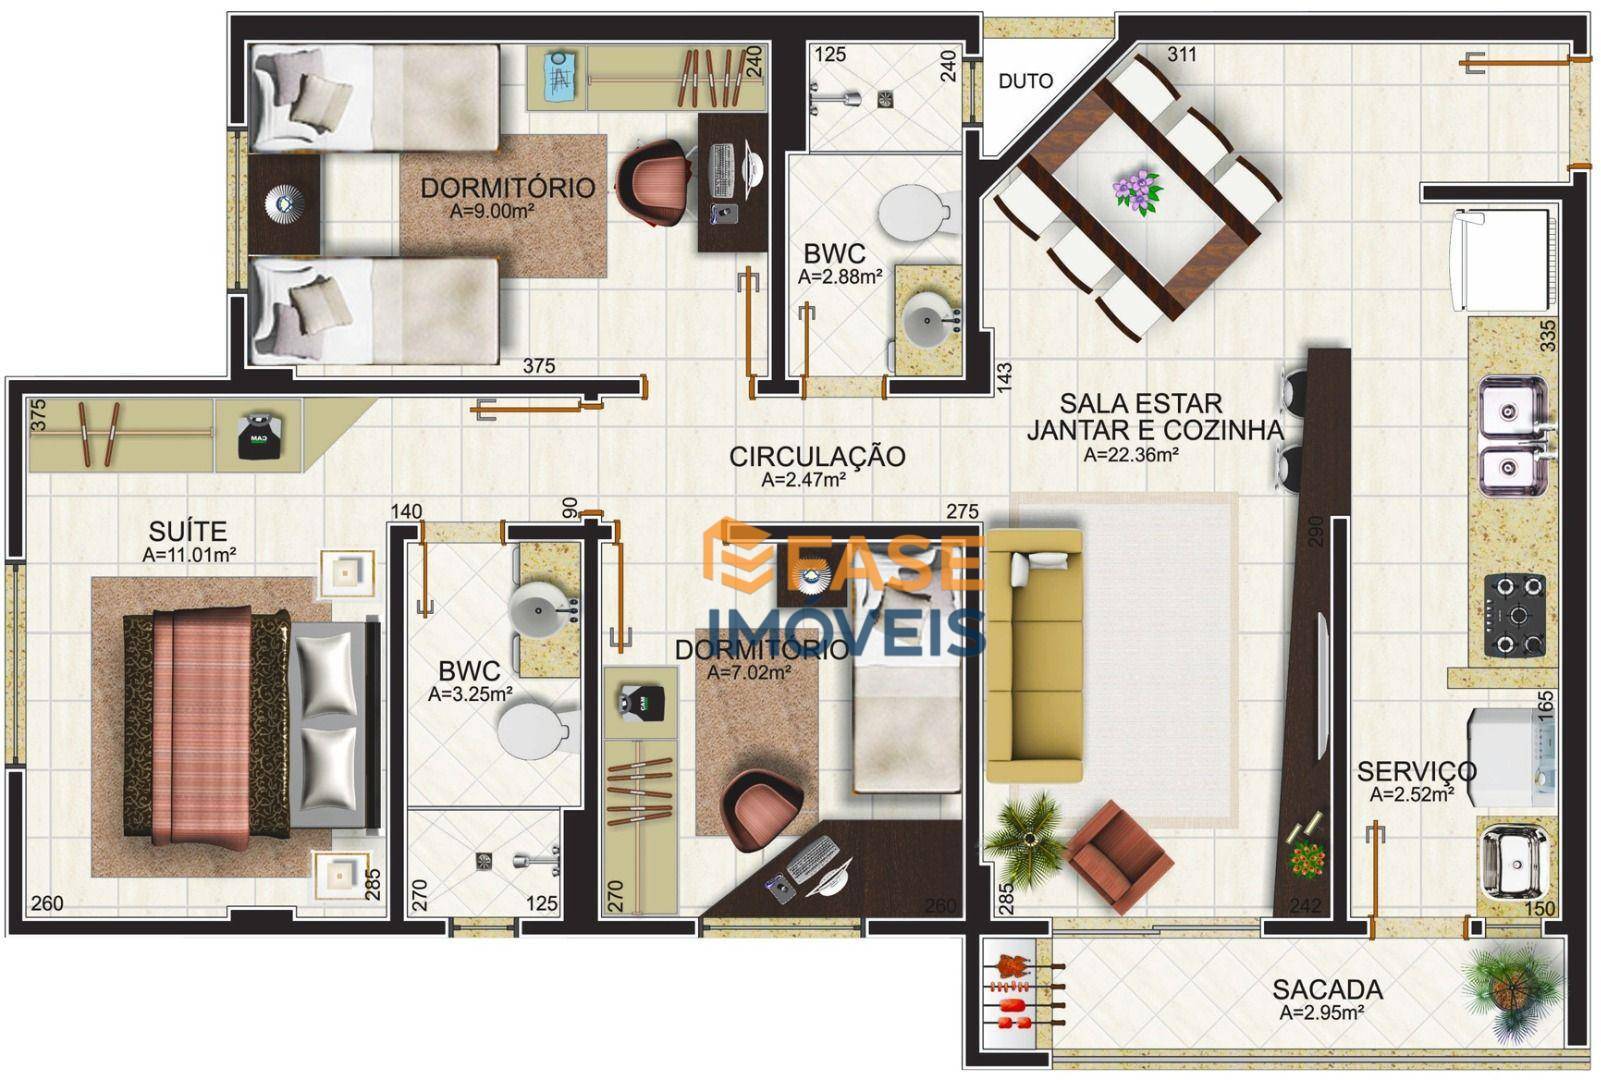 Apartamento, 3 quartos, 75 m² - Foto 4